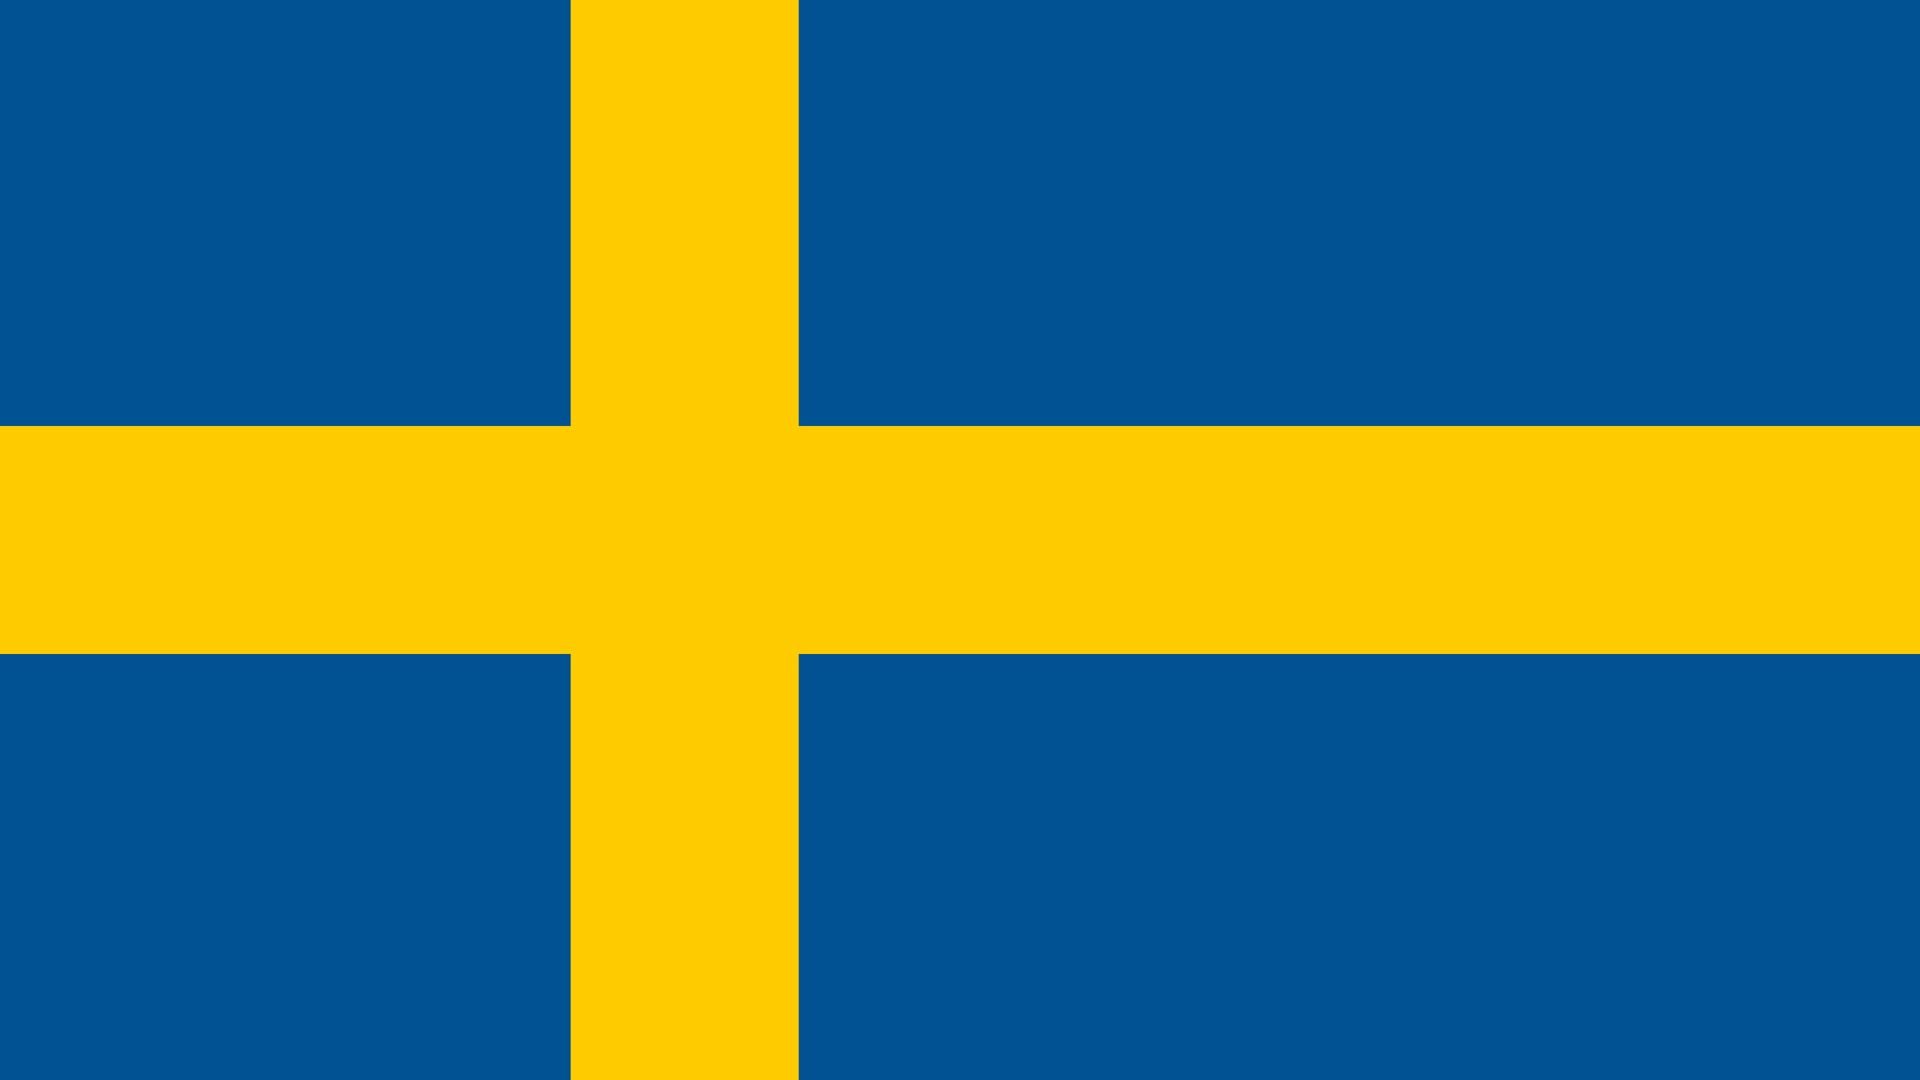 Bandeira da Suécia. Ela possui duas cores: azul e amarelo. O azul cobre toda a parte de trás da bandeira, já o amarelo preenche a cruz nórdica, que representa o cristianismo.